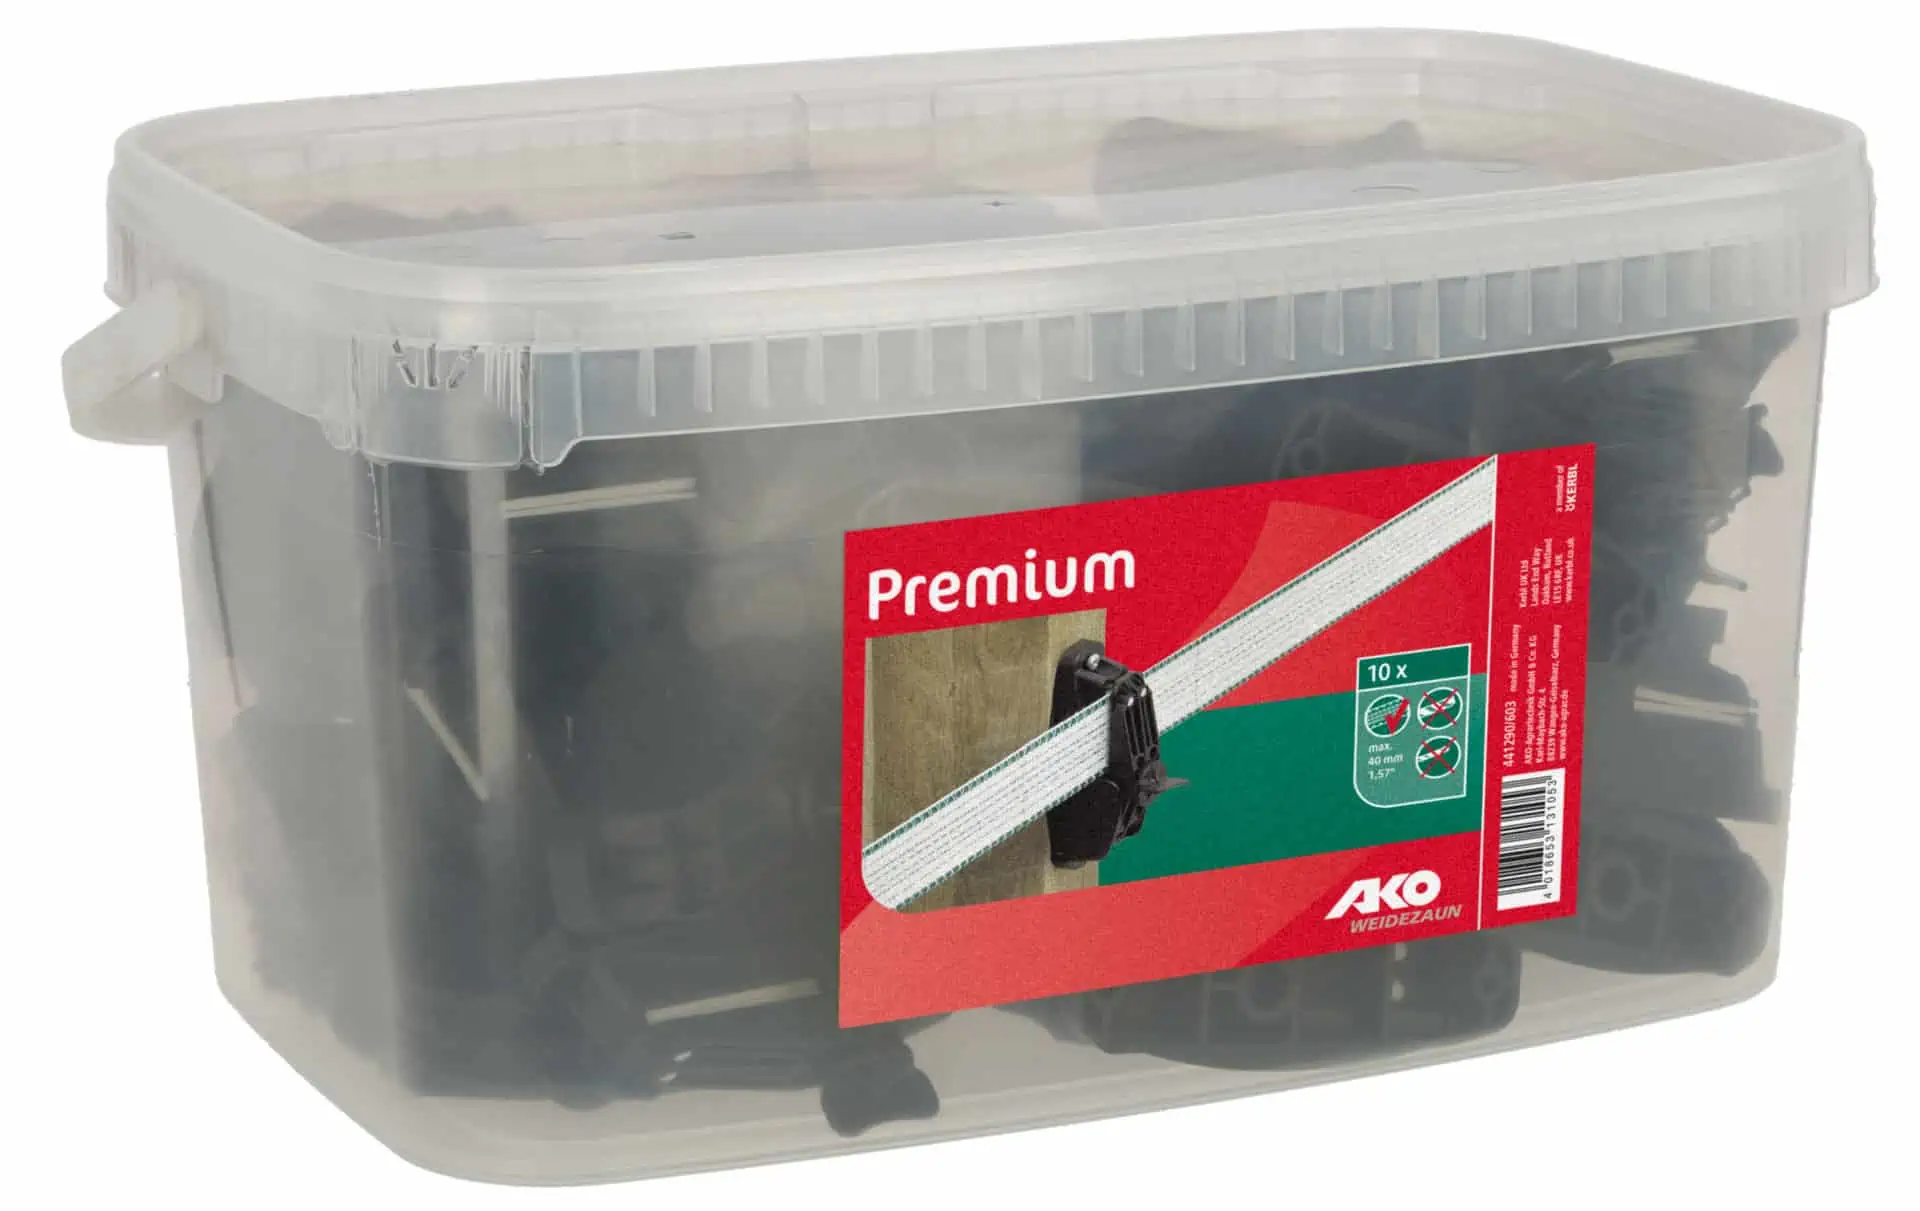 Isolateur de serrage Ako Premium seau de 60 pcs